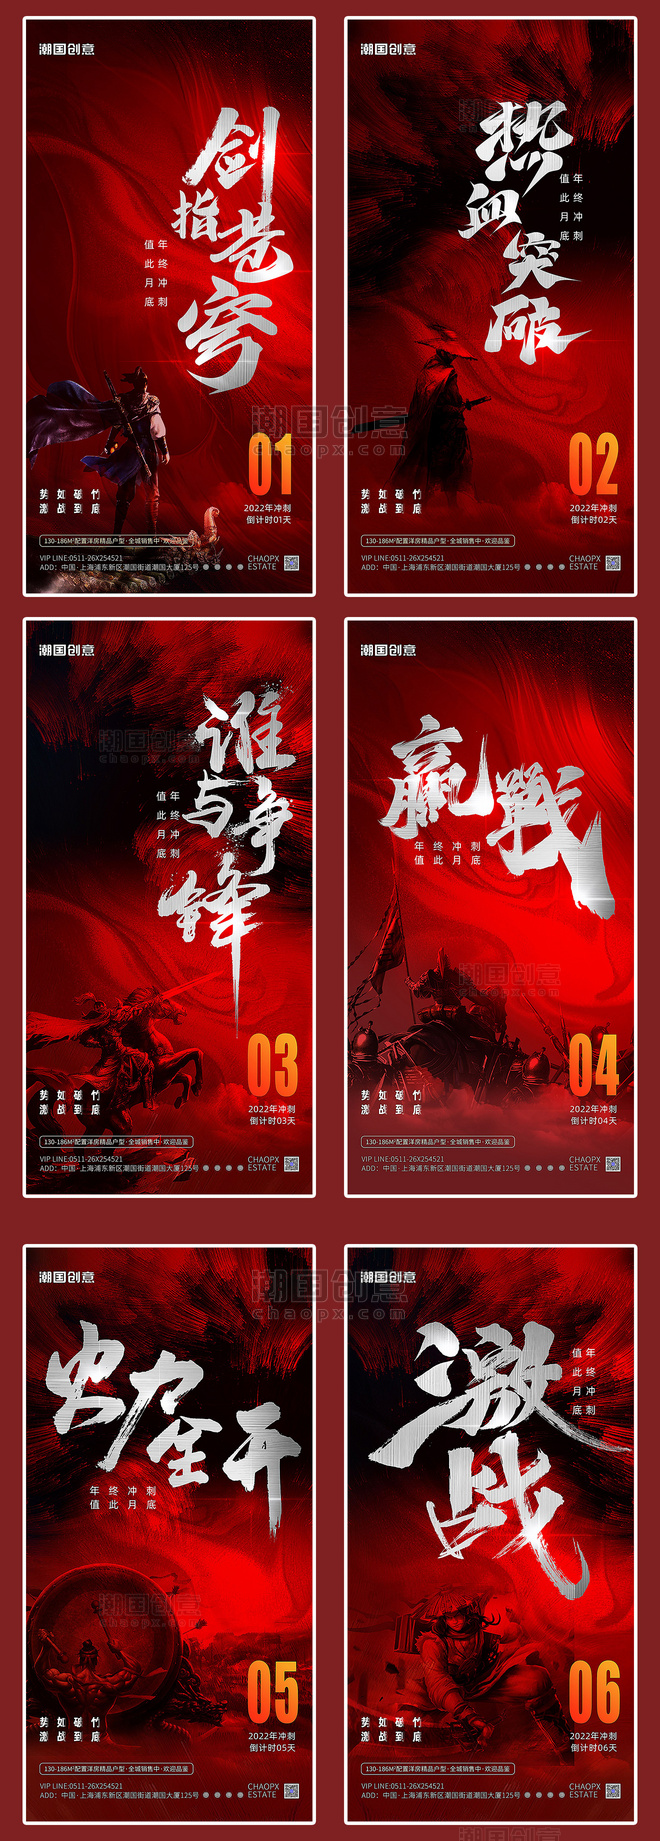 武侠风中国风深红色倒计时企业开业系列宣传海报